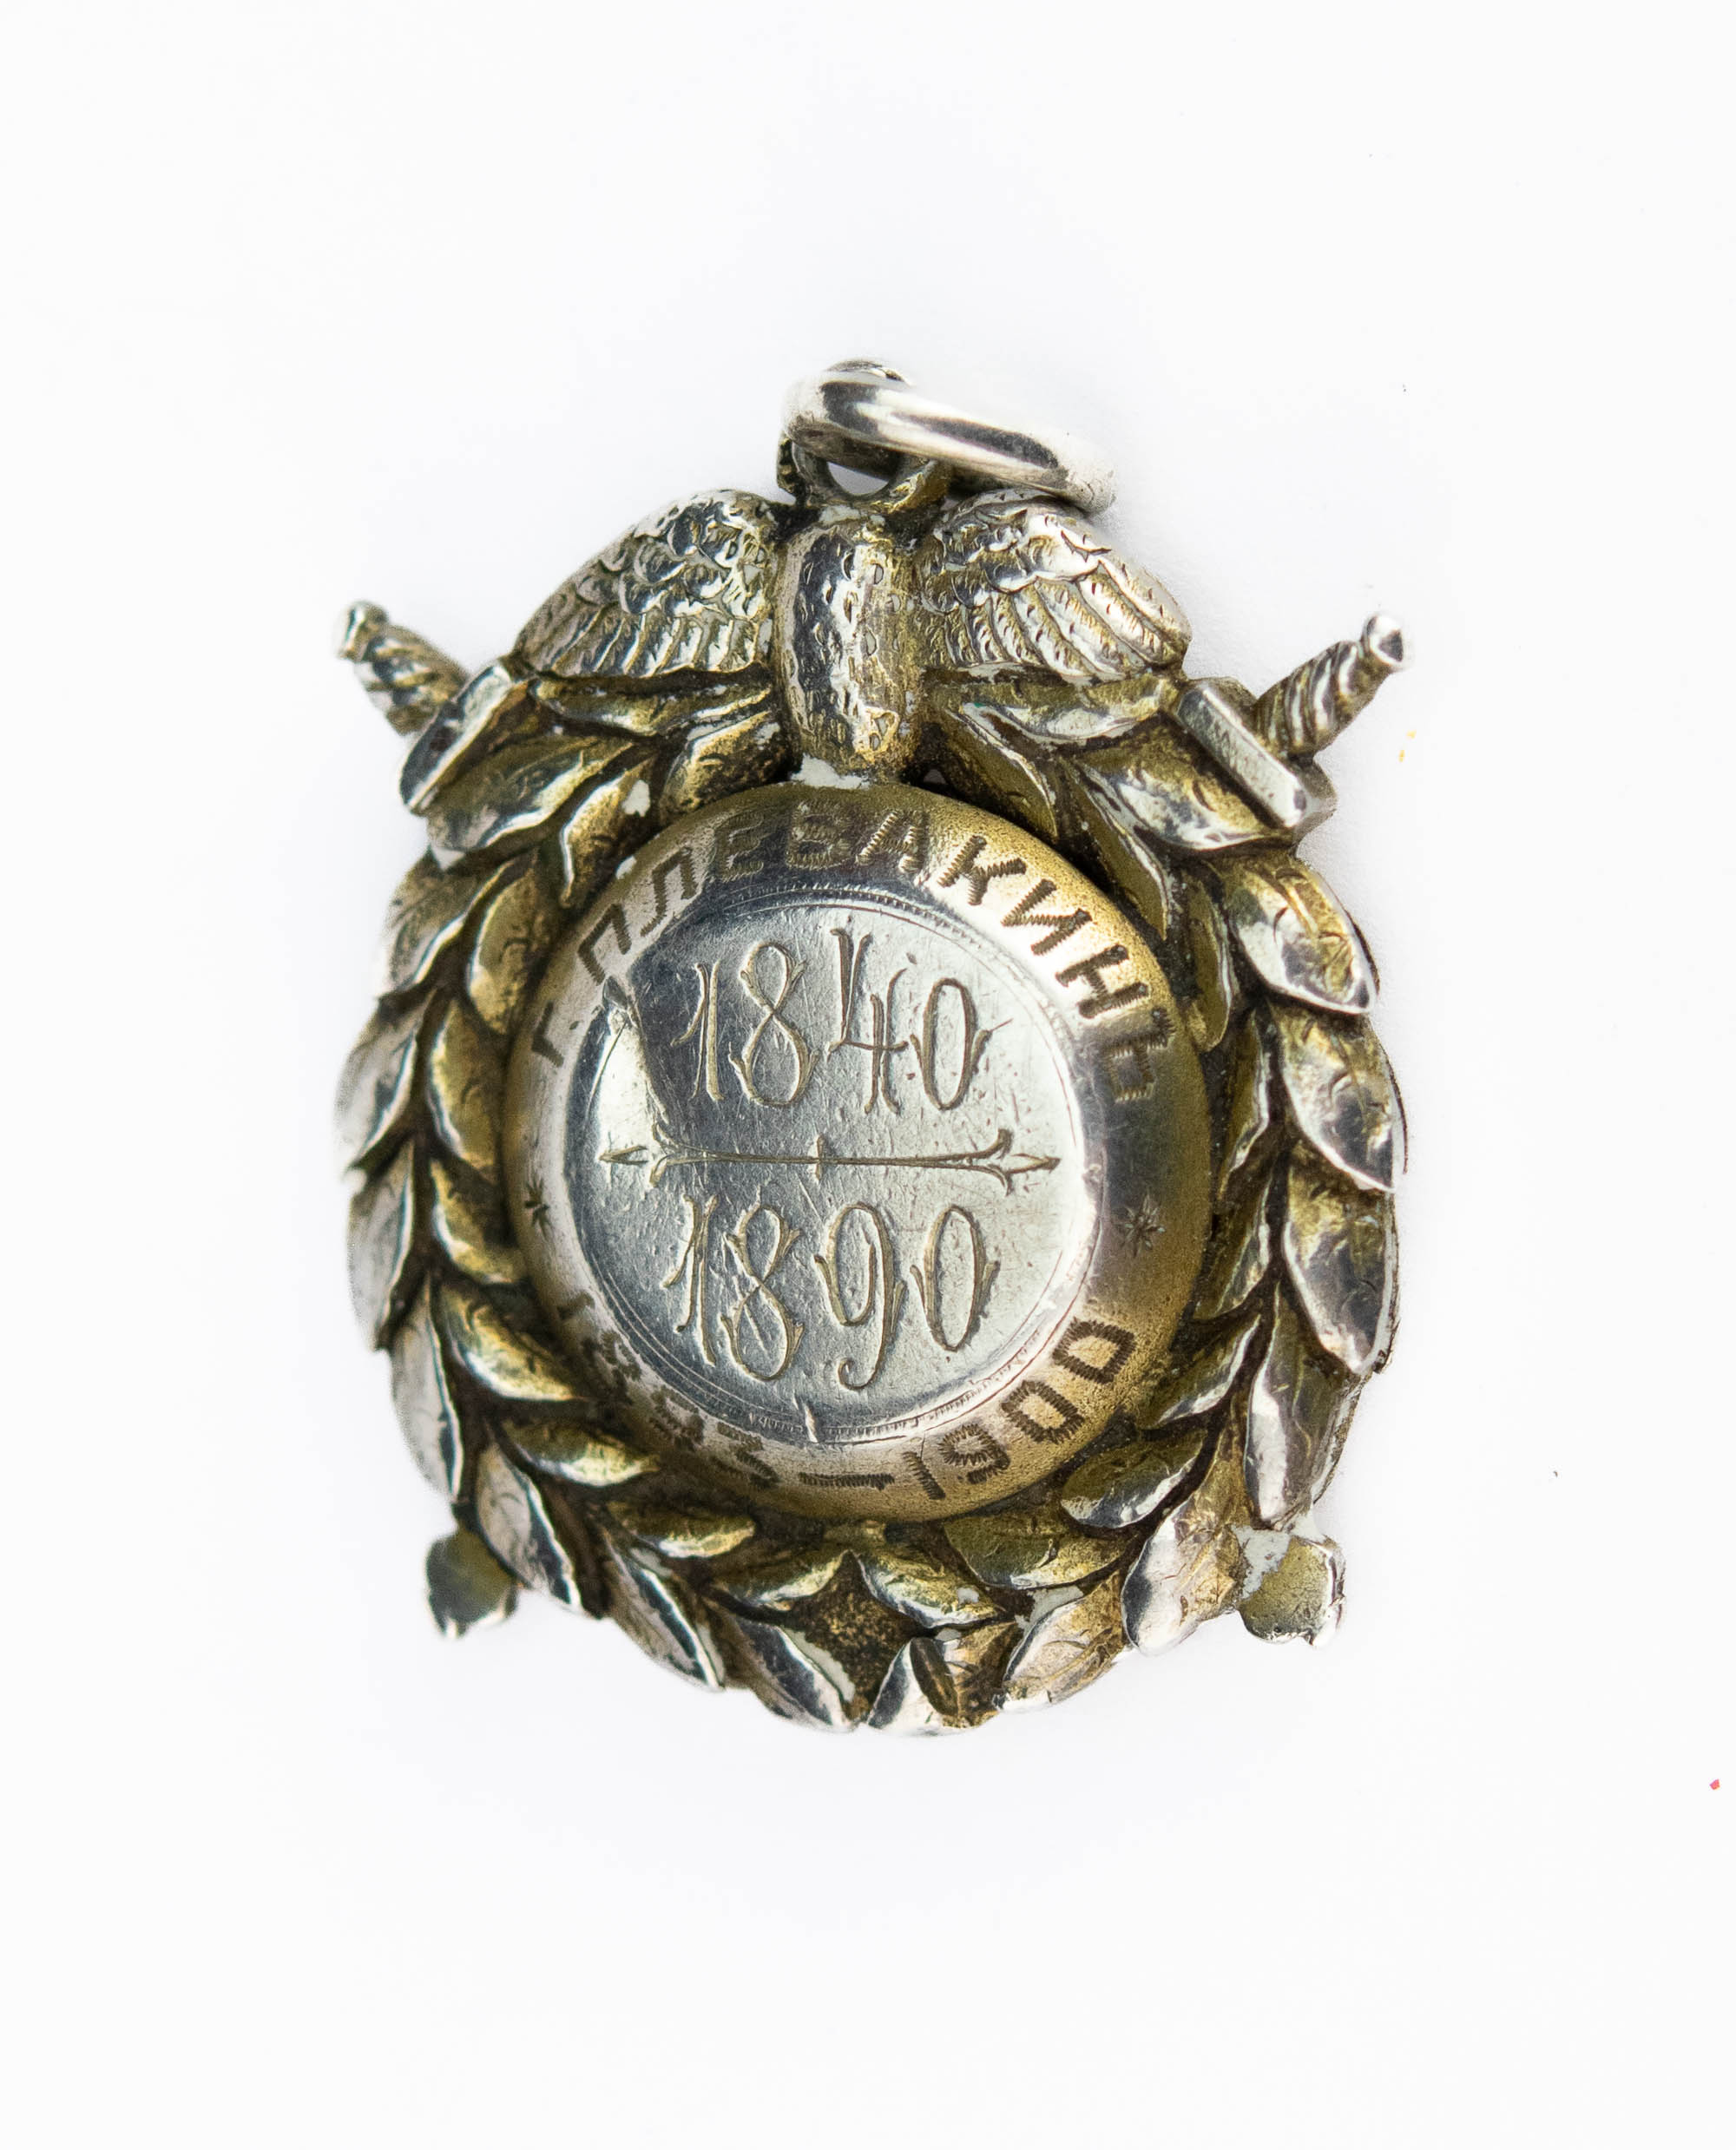 Tsaari-Vene medal 1840-1890 Plevakin Riia, hõbe emailiga